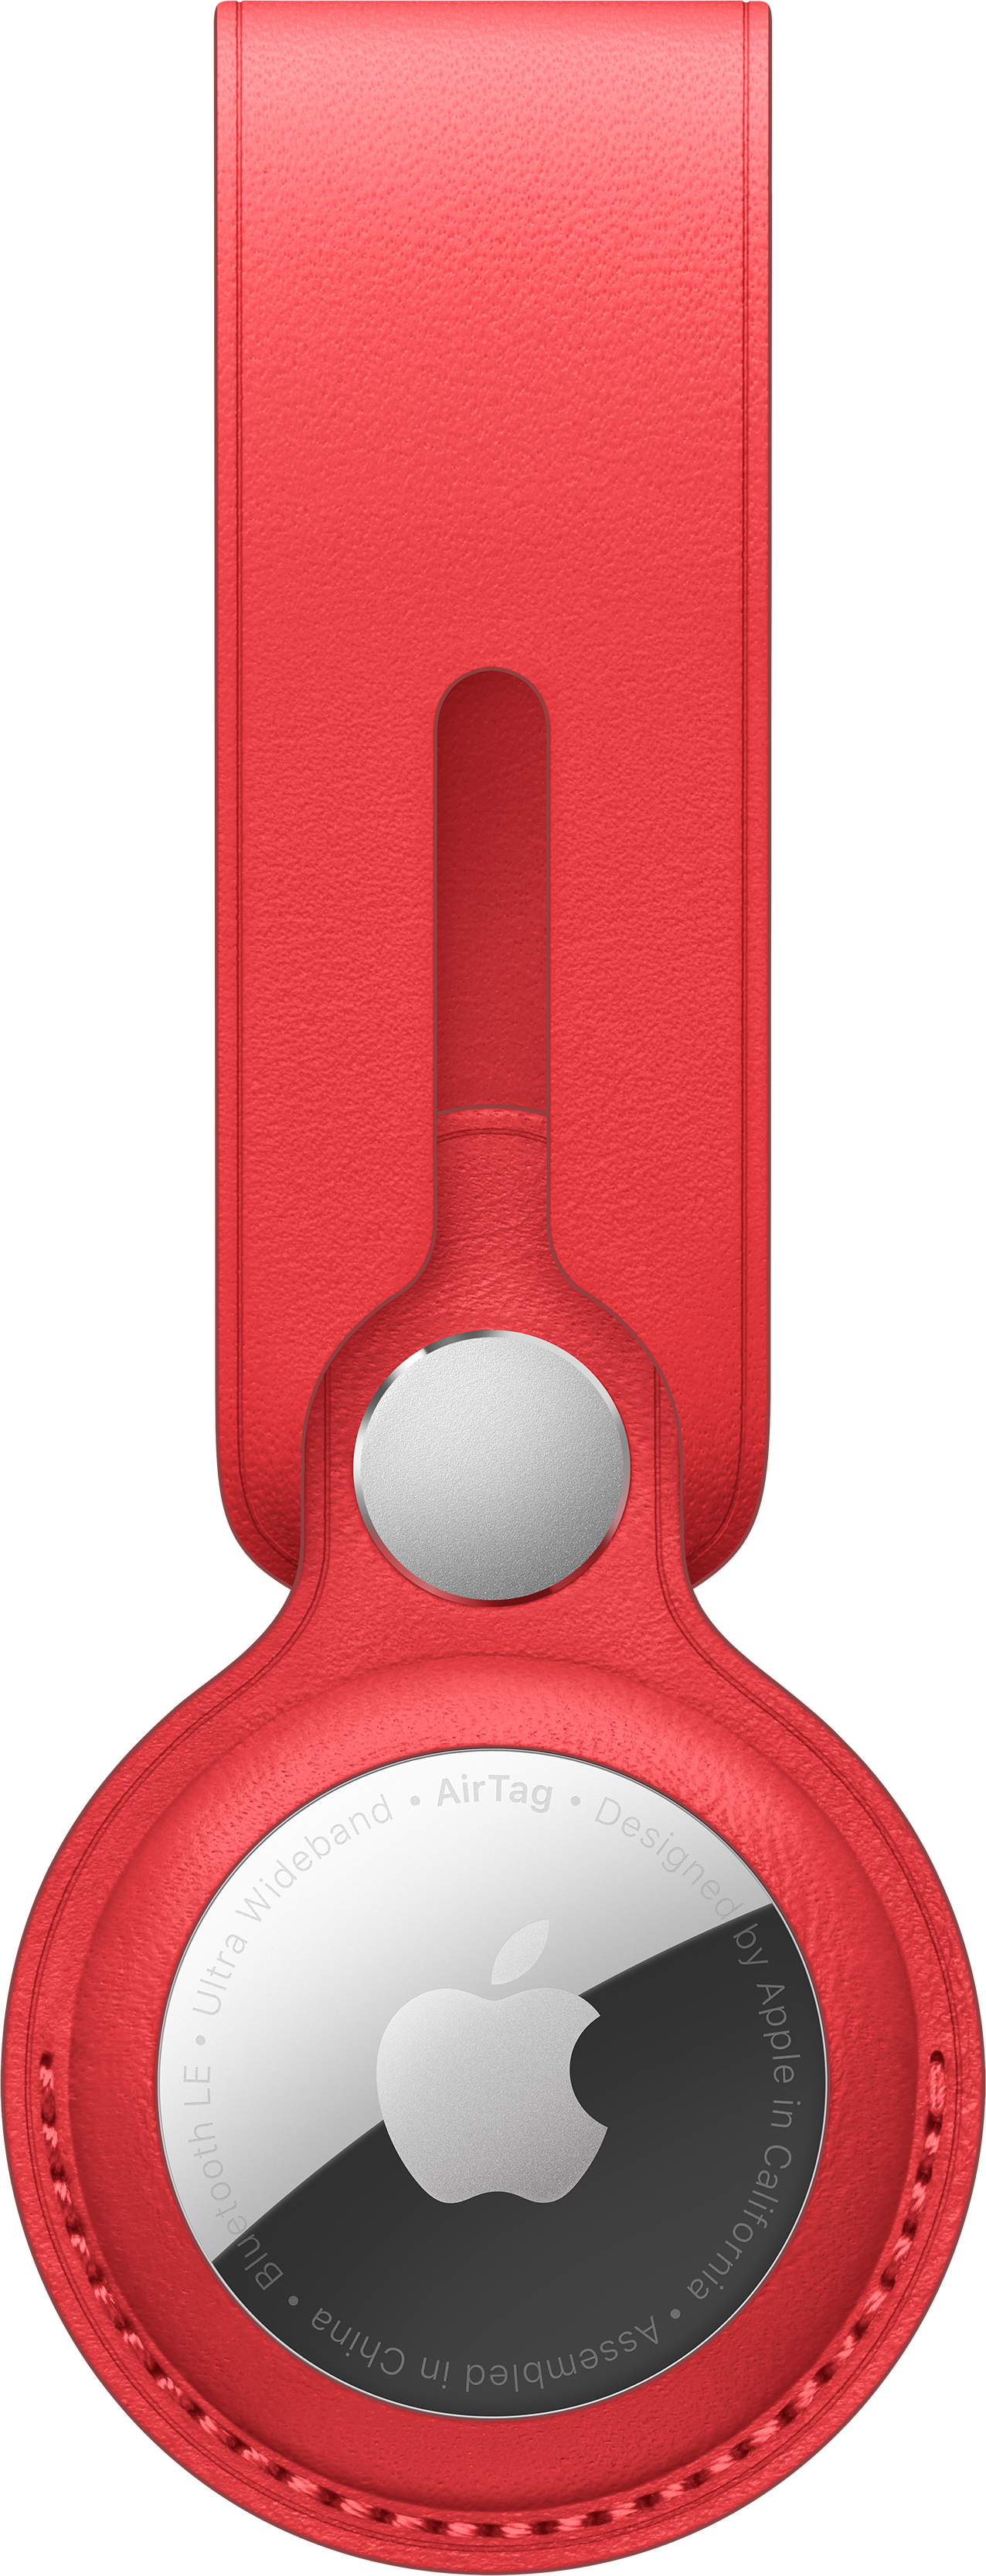 Apple (PRODUCT) RED - Tasche für Airtag - Leder